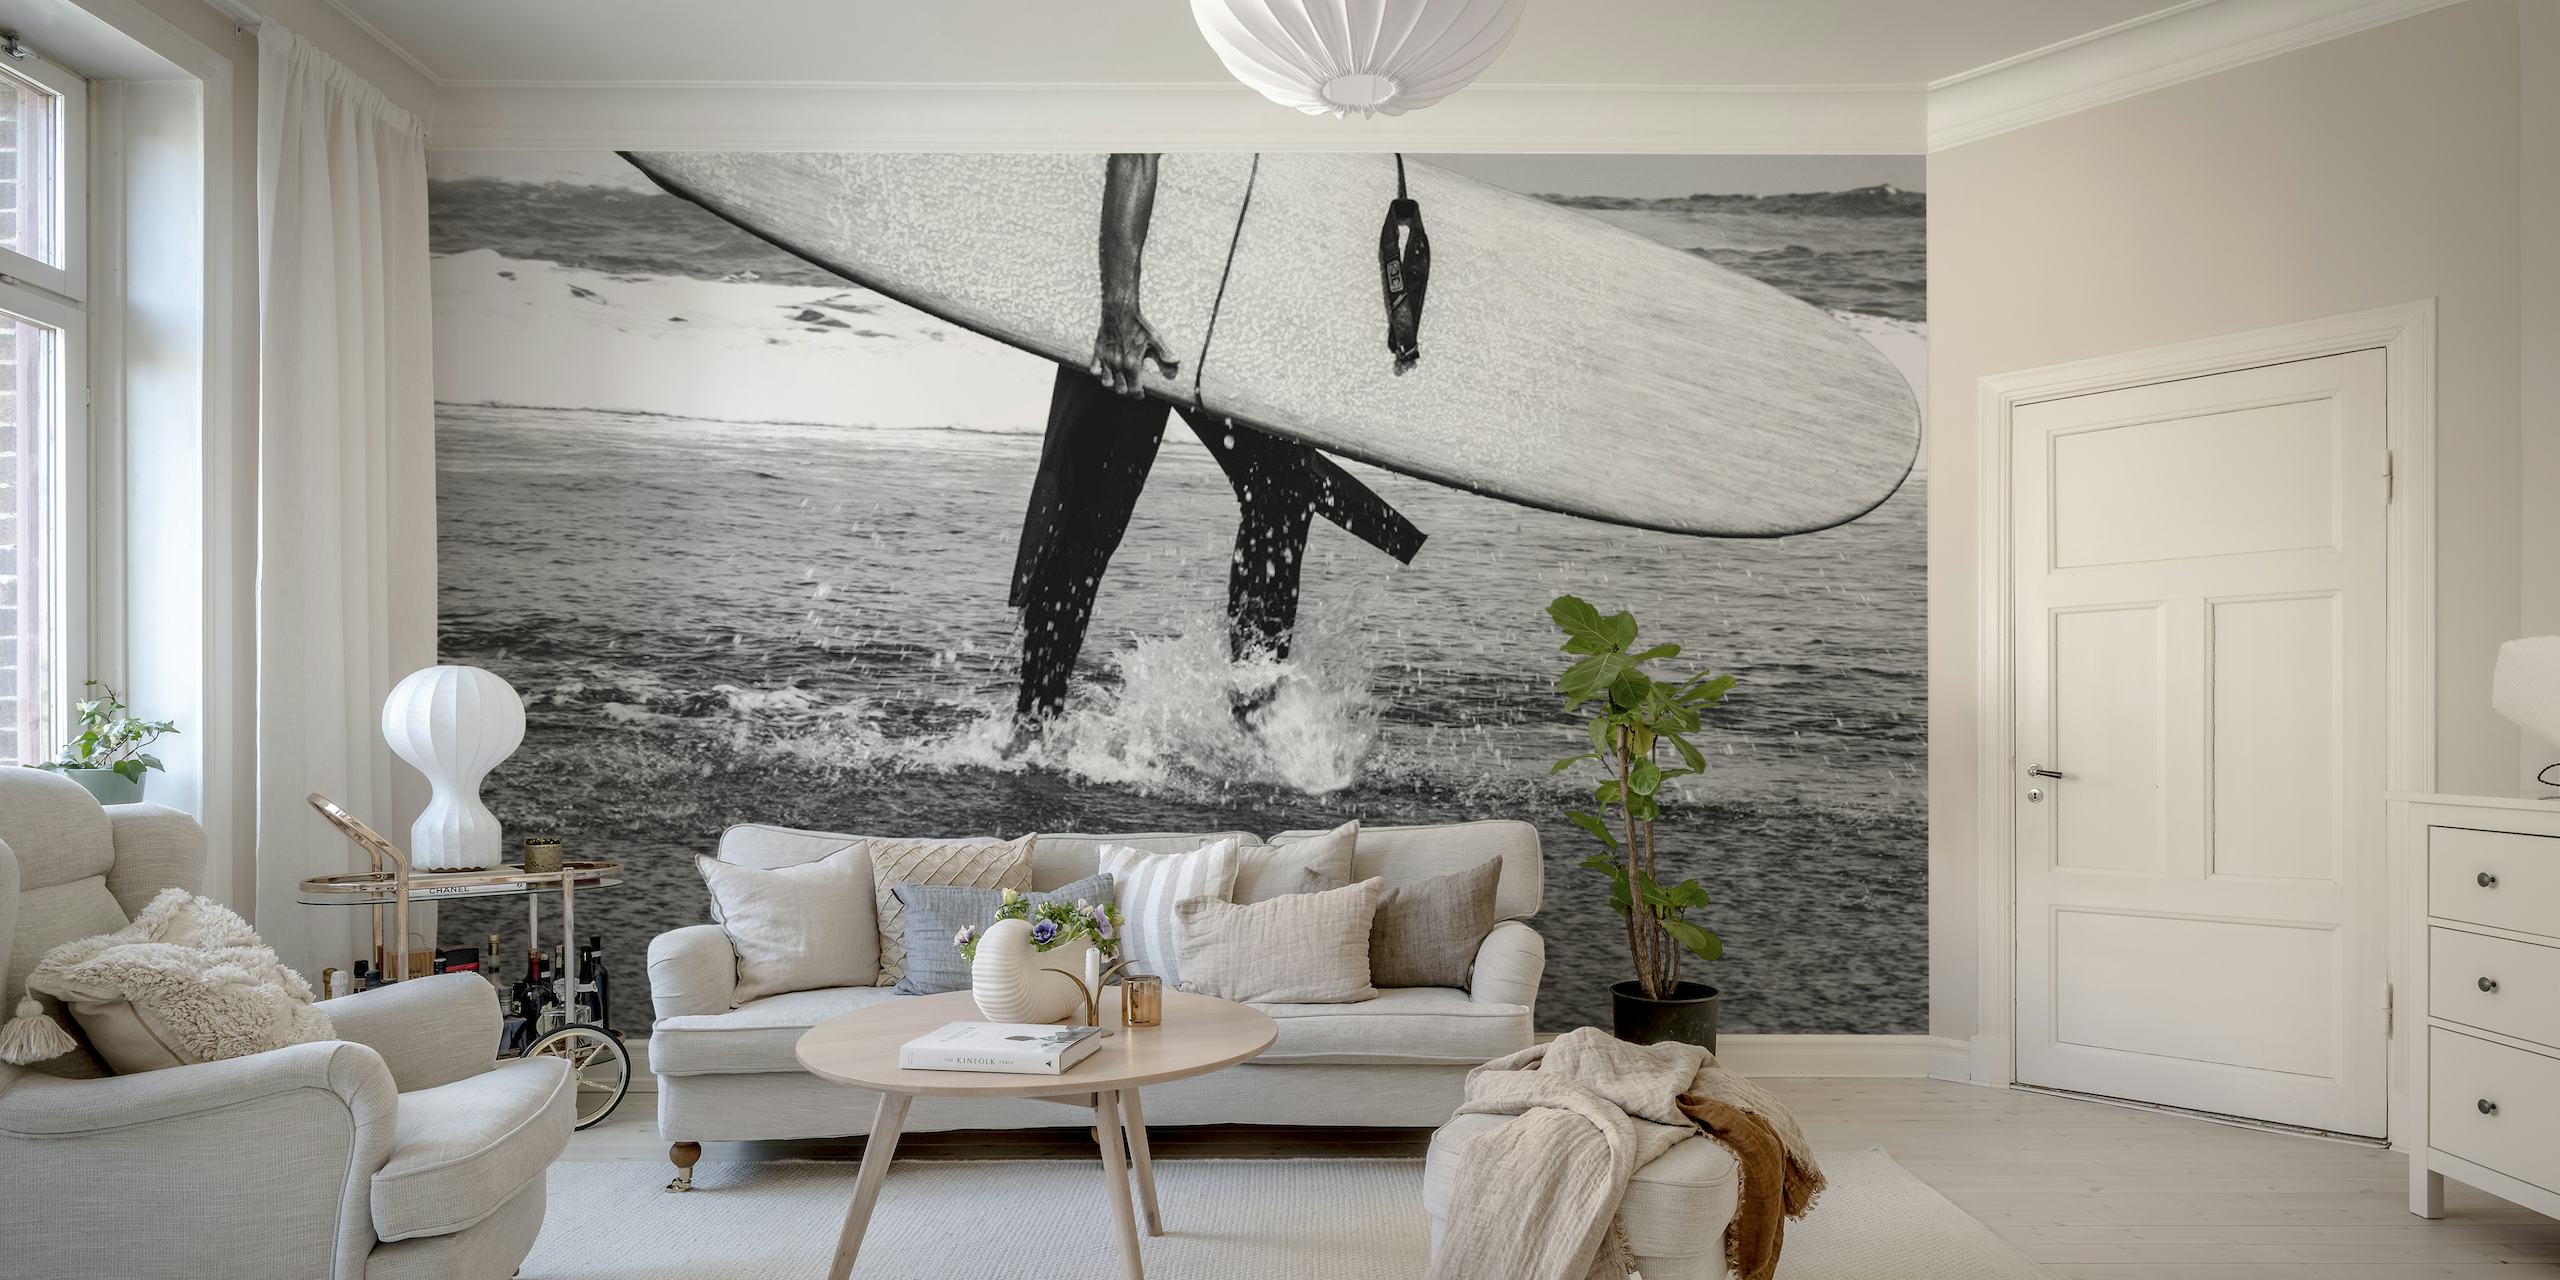 Jednobojni surfer i daska za surfanje na zidnoj tazici na plaži